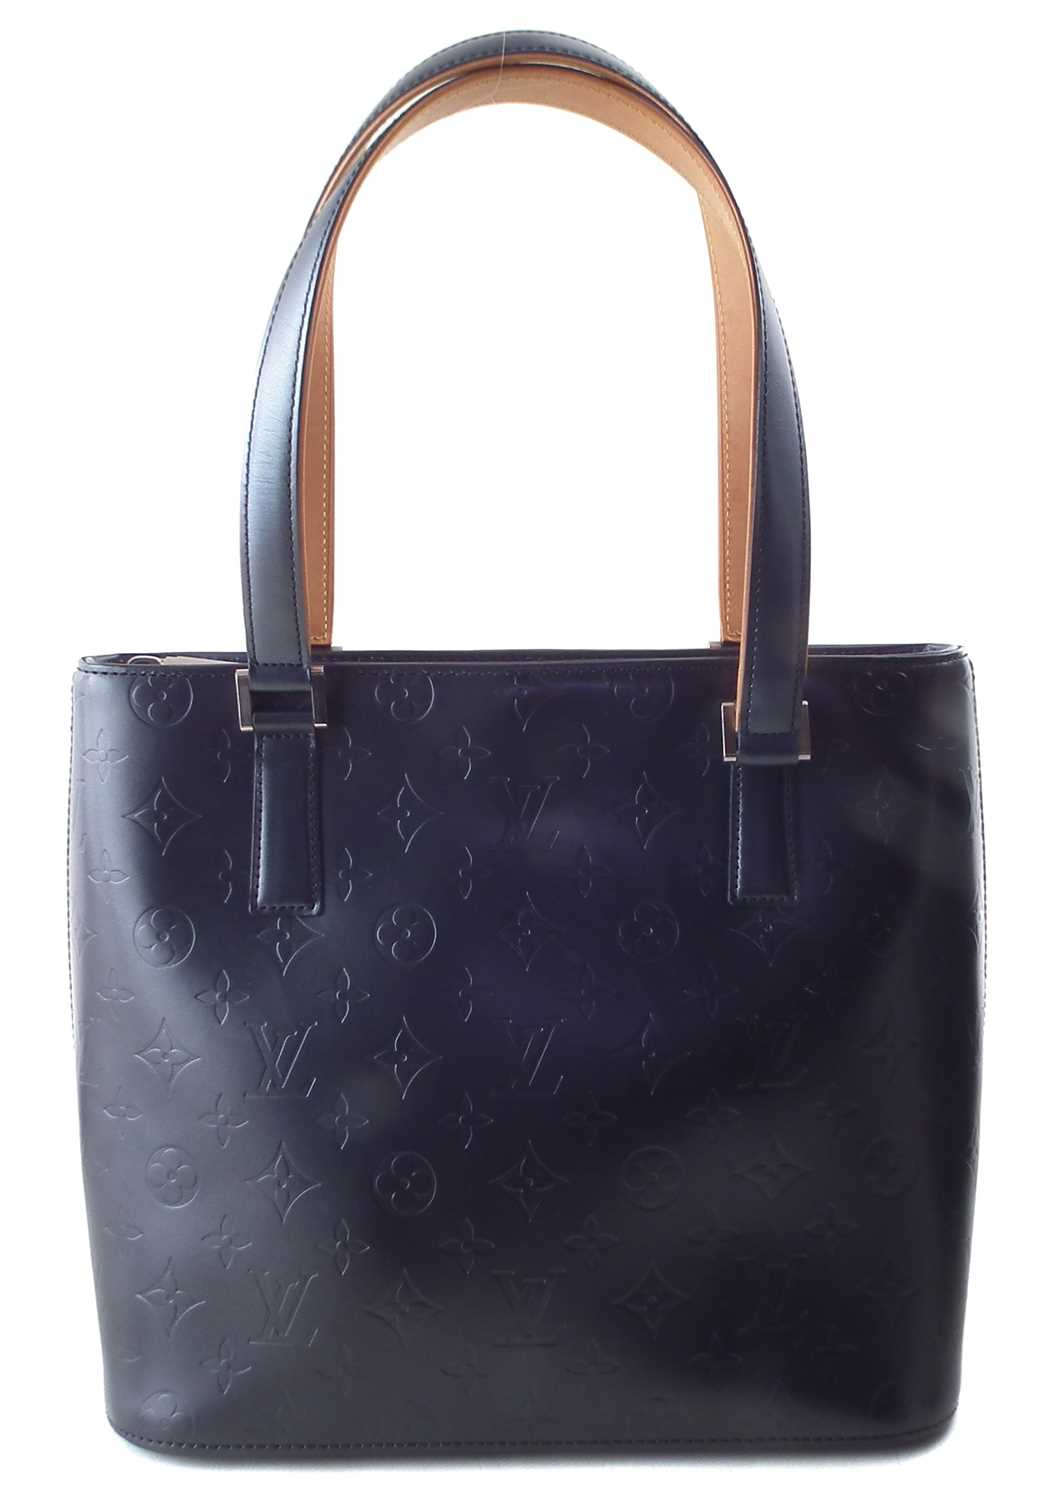 A Louis Vuitton Stockton handbag, - Image 2 of 2